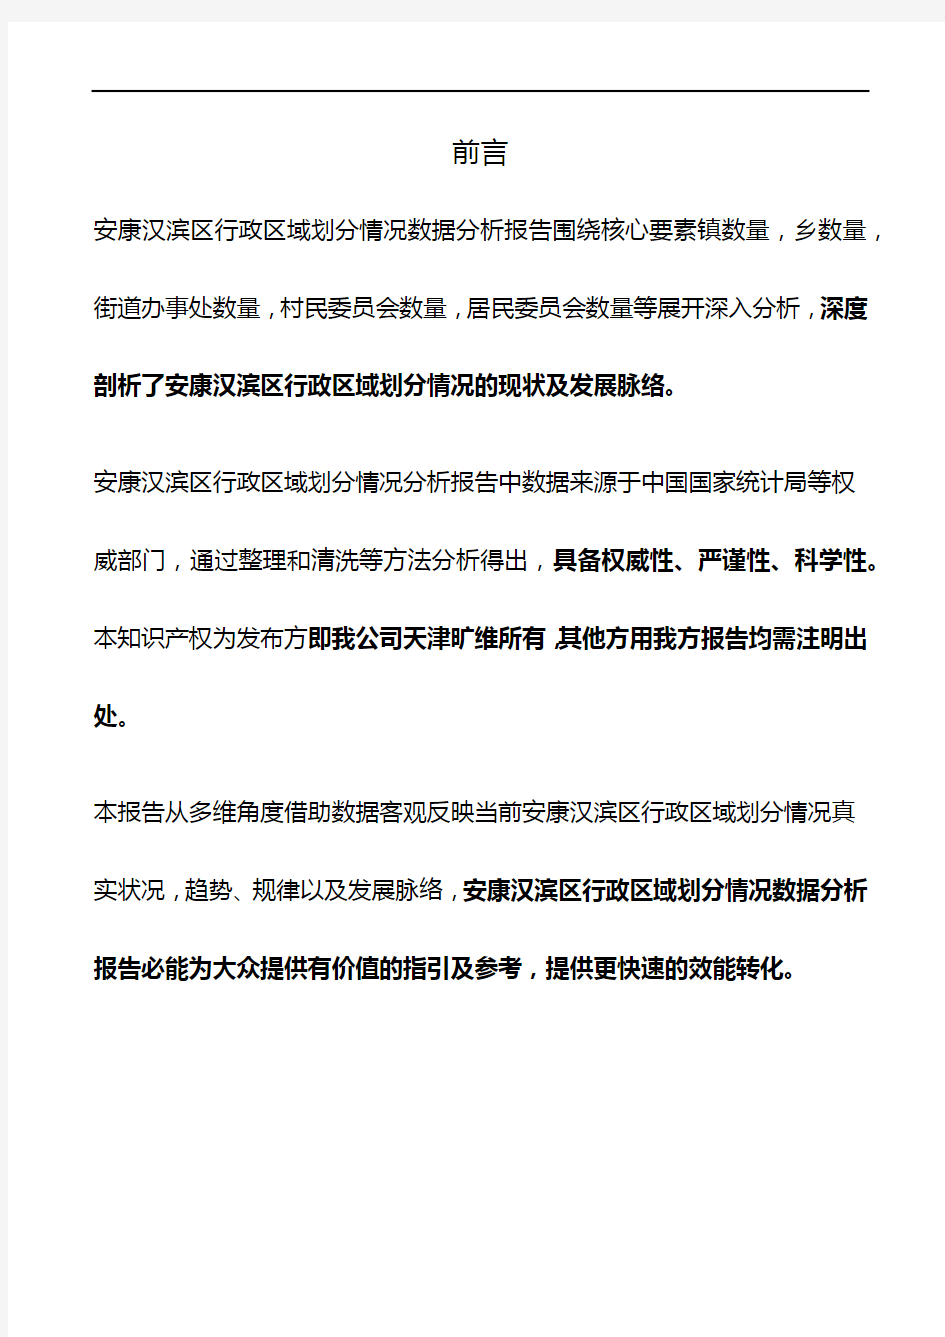 陕西省安康汉滨区行政区域划分情况3年数据分析报告2020版